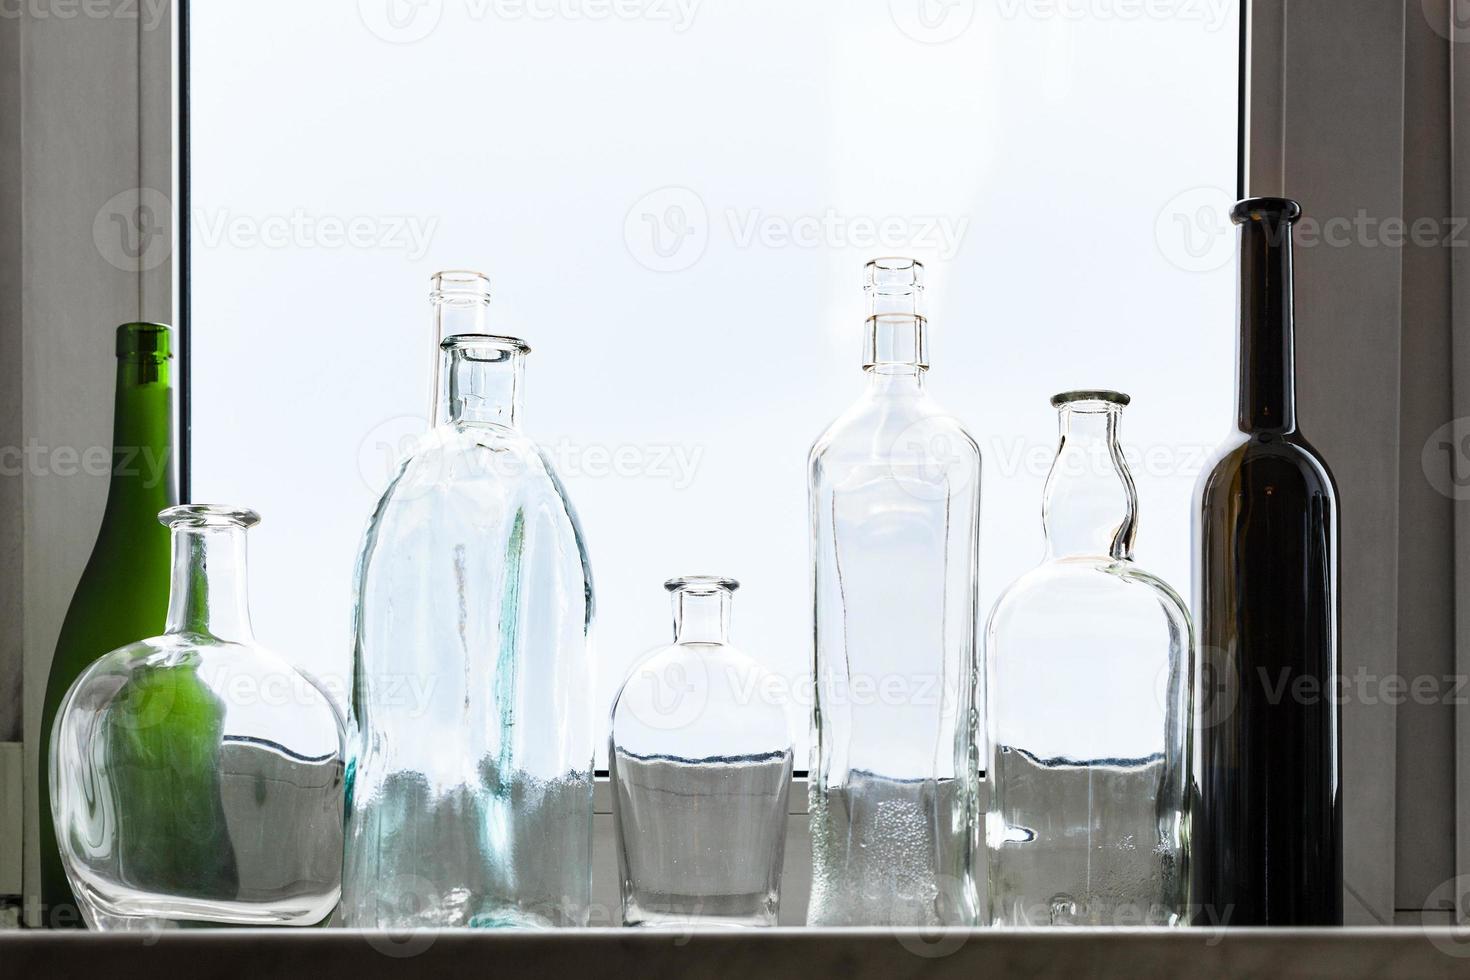 molti vuoto ubriaco bottiglie su casa finestra davanzale foto